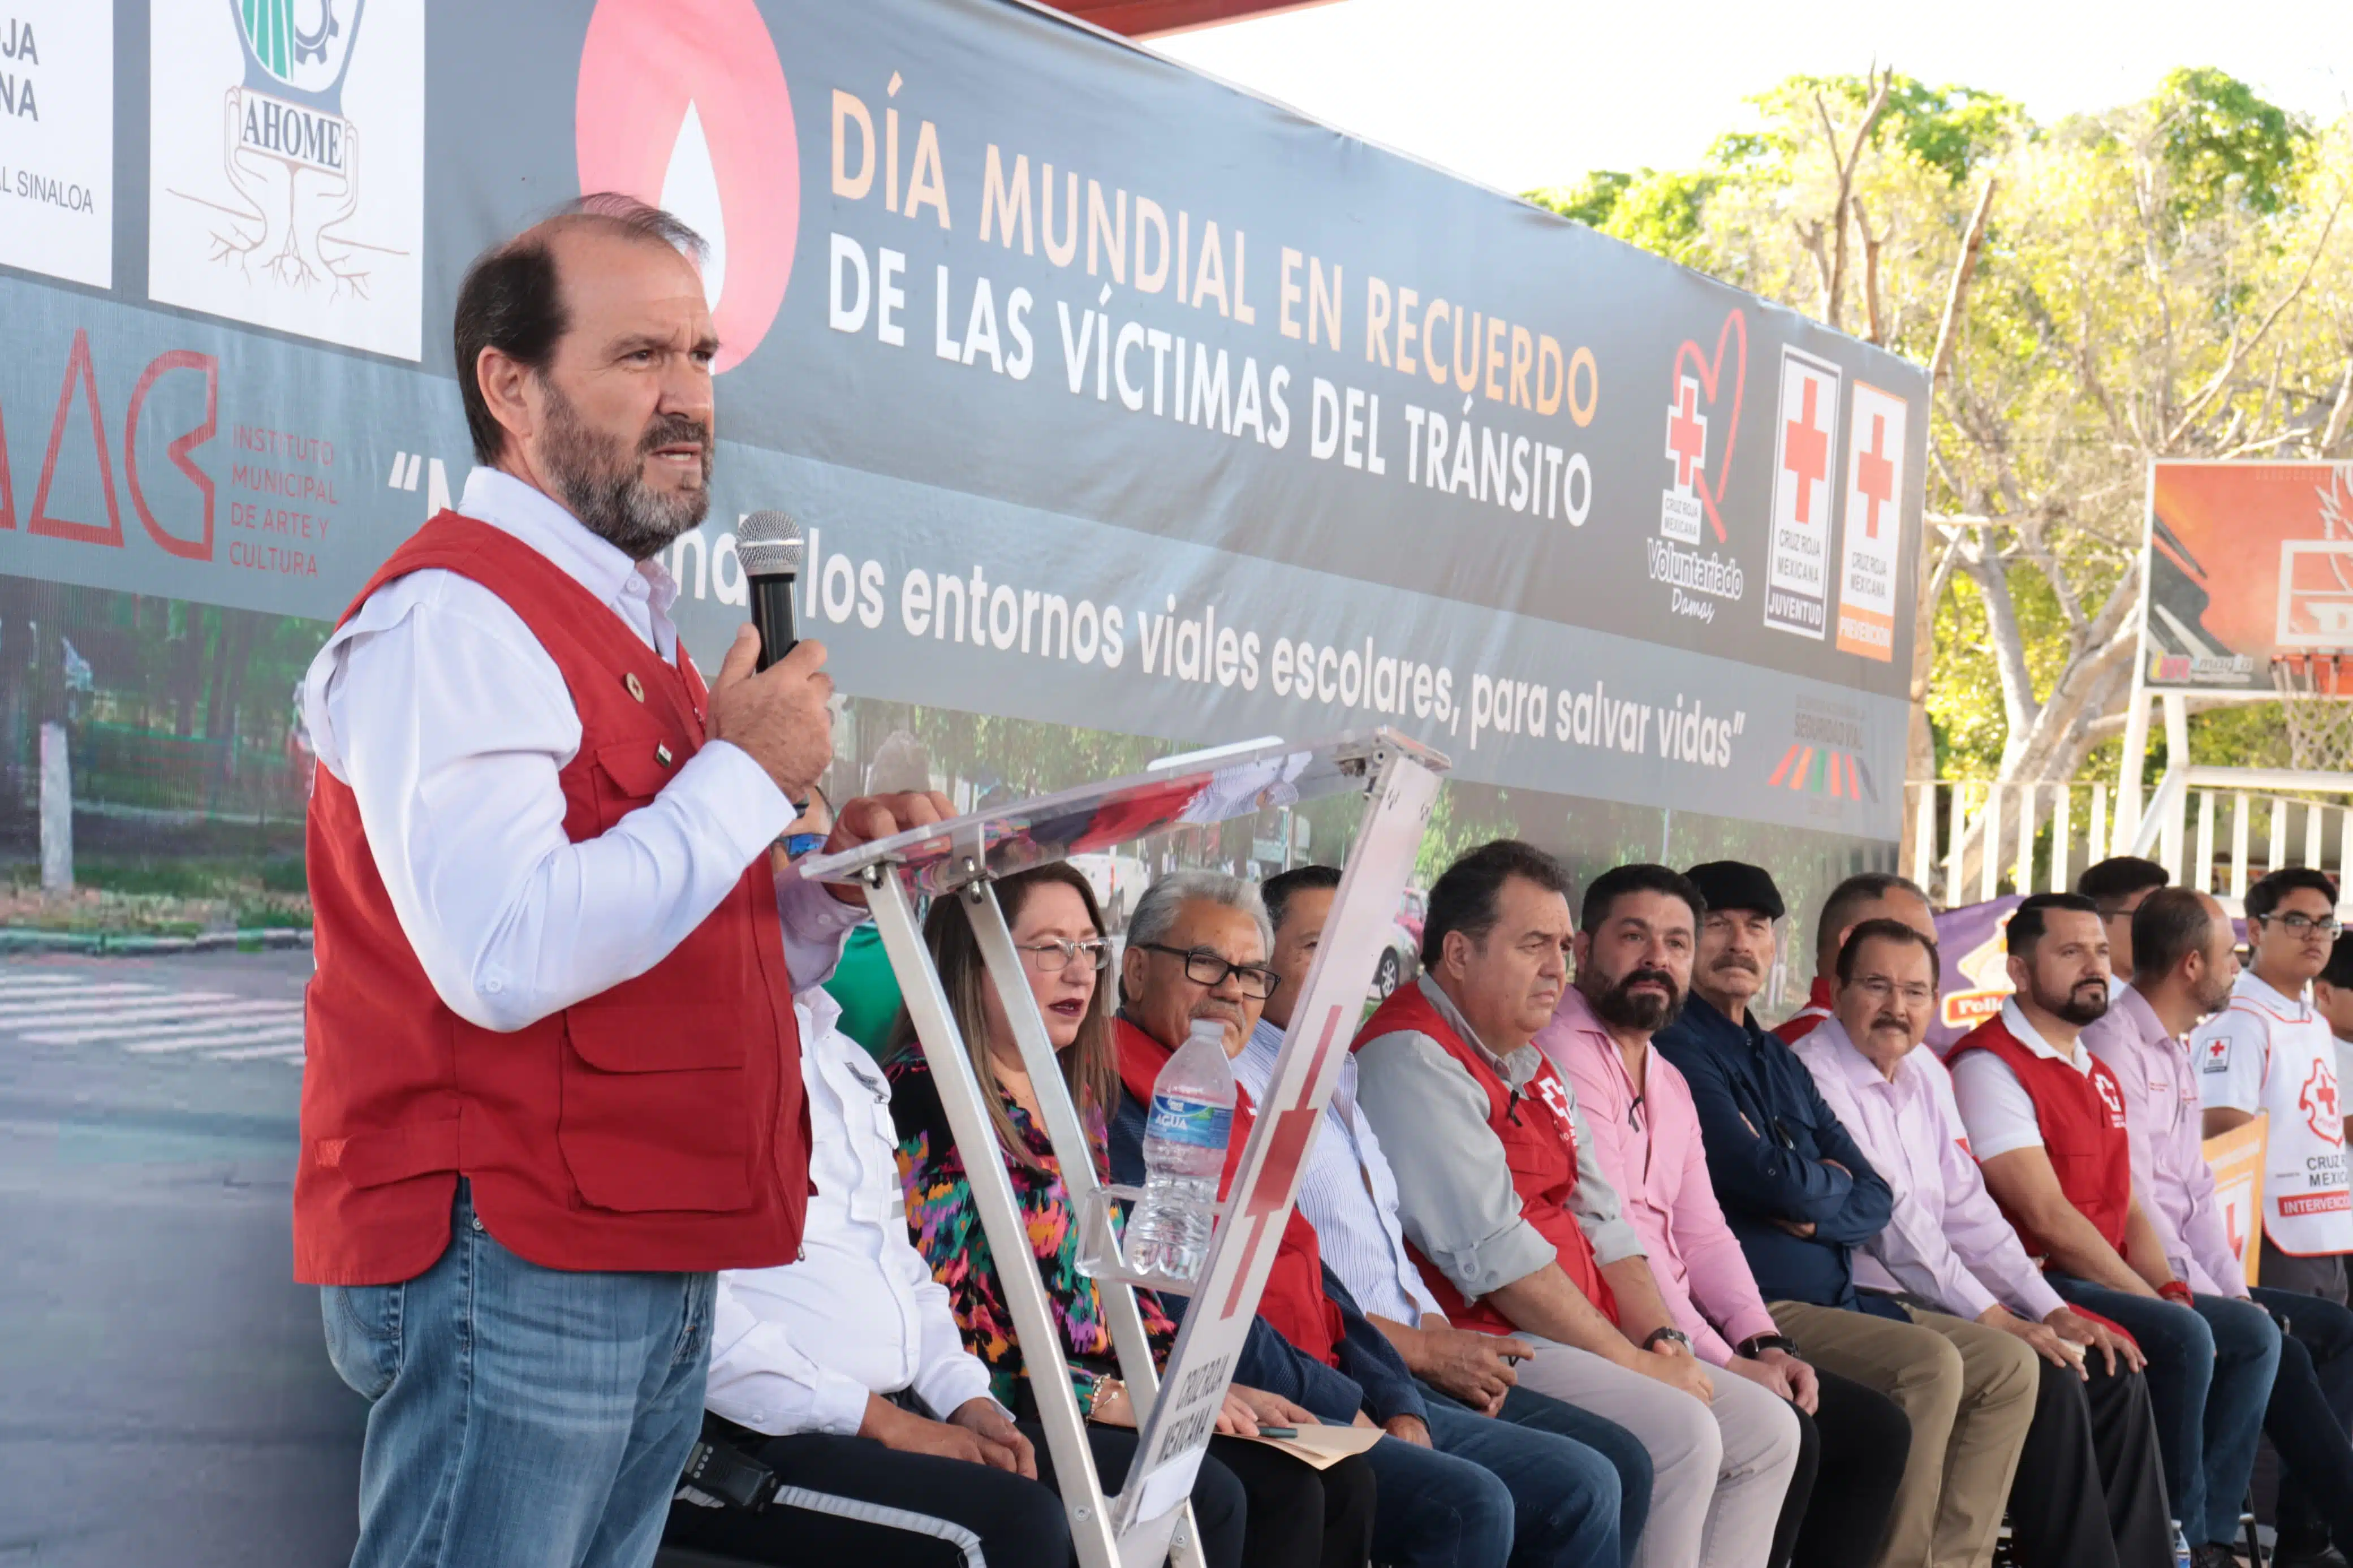 Carlos Bloch Artola, delegado estatal de la Cruz Roja en Sinaloa